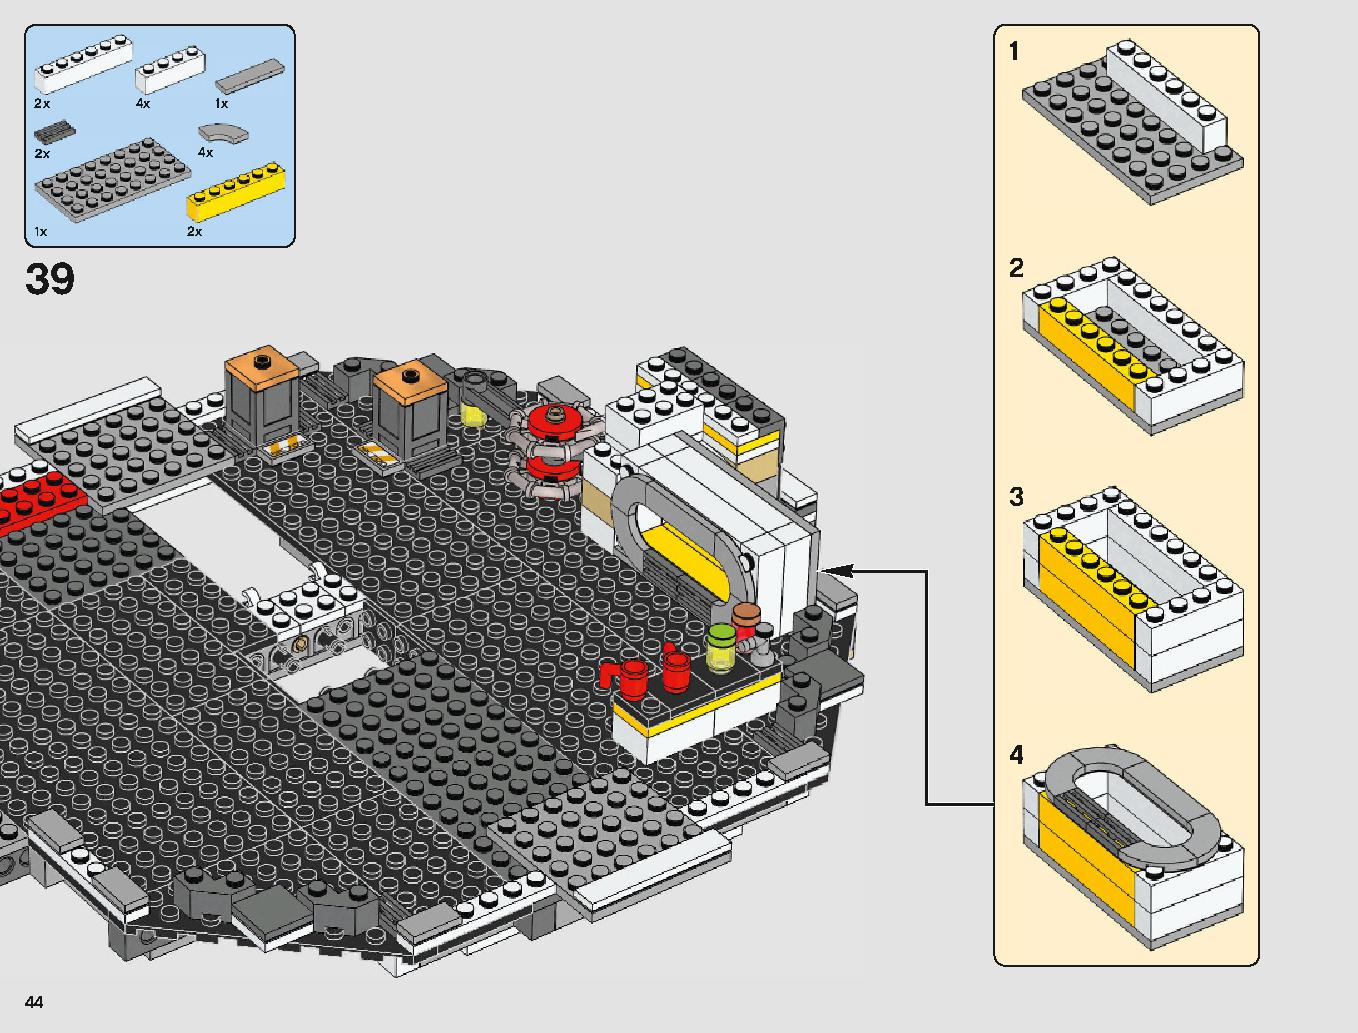 ミレニアム・ファルコン 75212 レゴの商品情報 レゴの説明書・組立方法 44 page